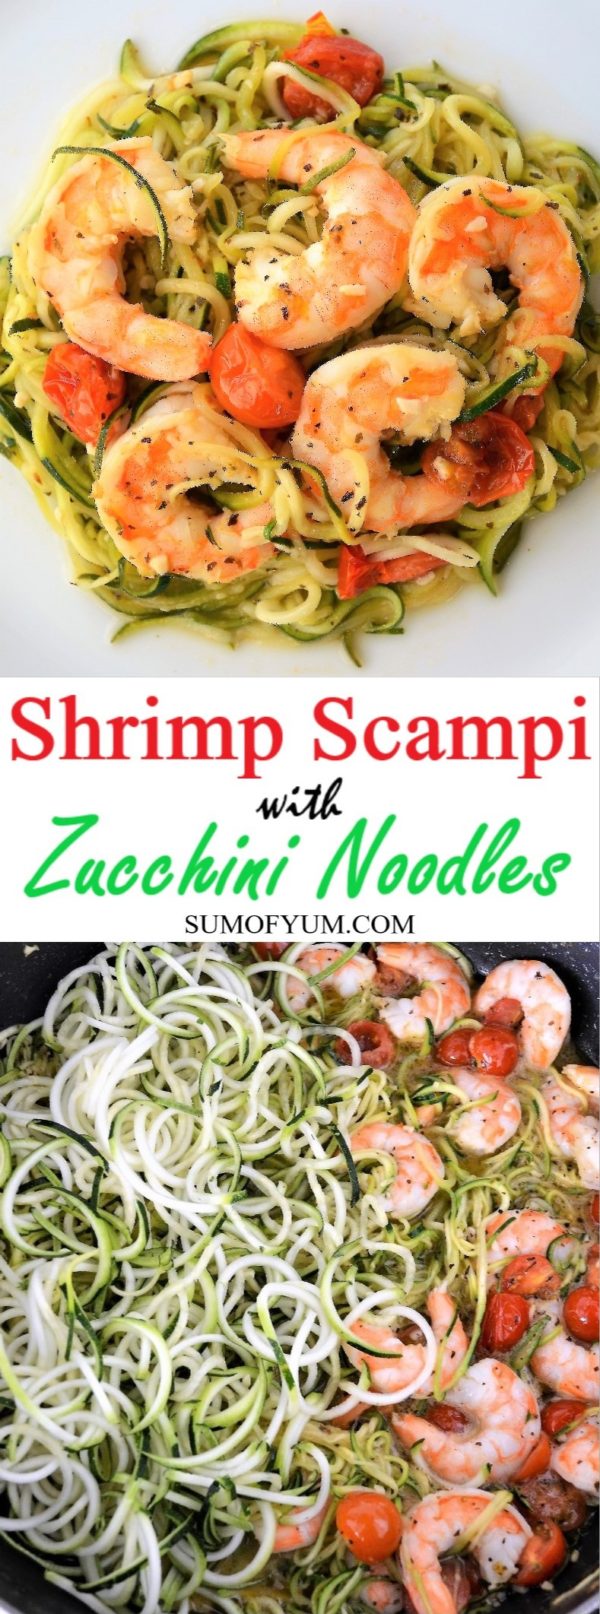 Shrimp Scampi Zucchini Noodles - Sum of Yum